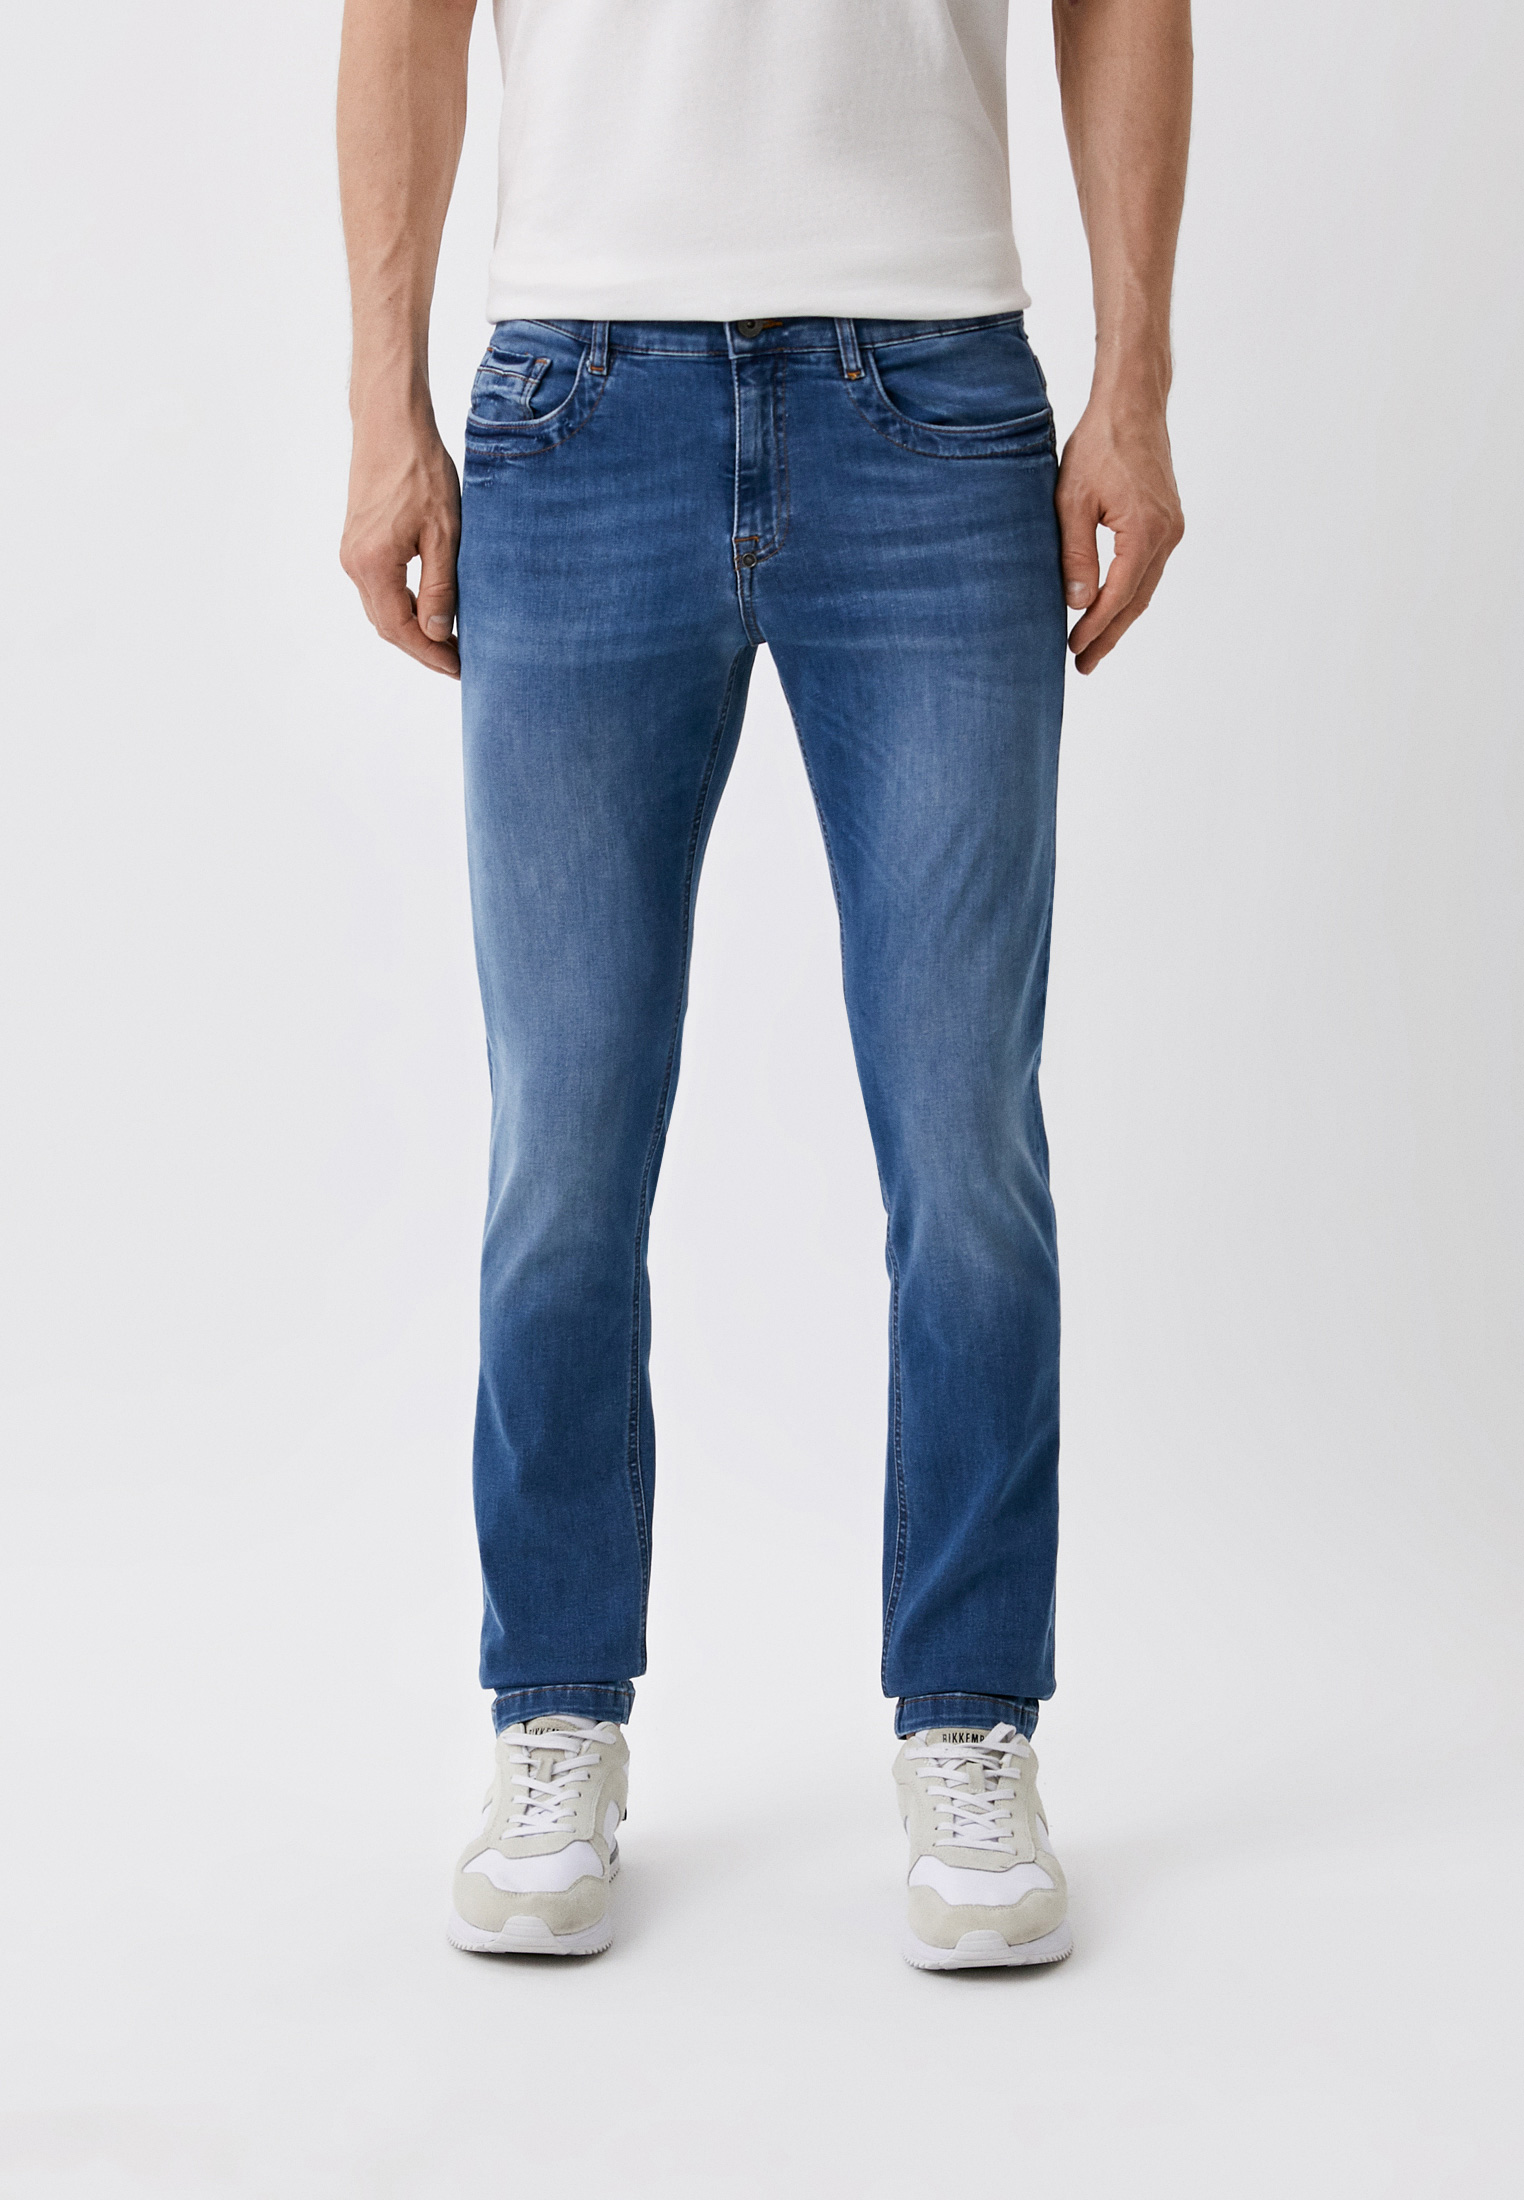 Мужские зауженные джинсы Bikkembergs (Биккембергс) CQ10189S3511: изображение 5